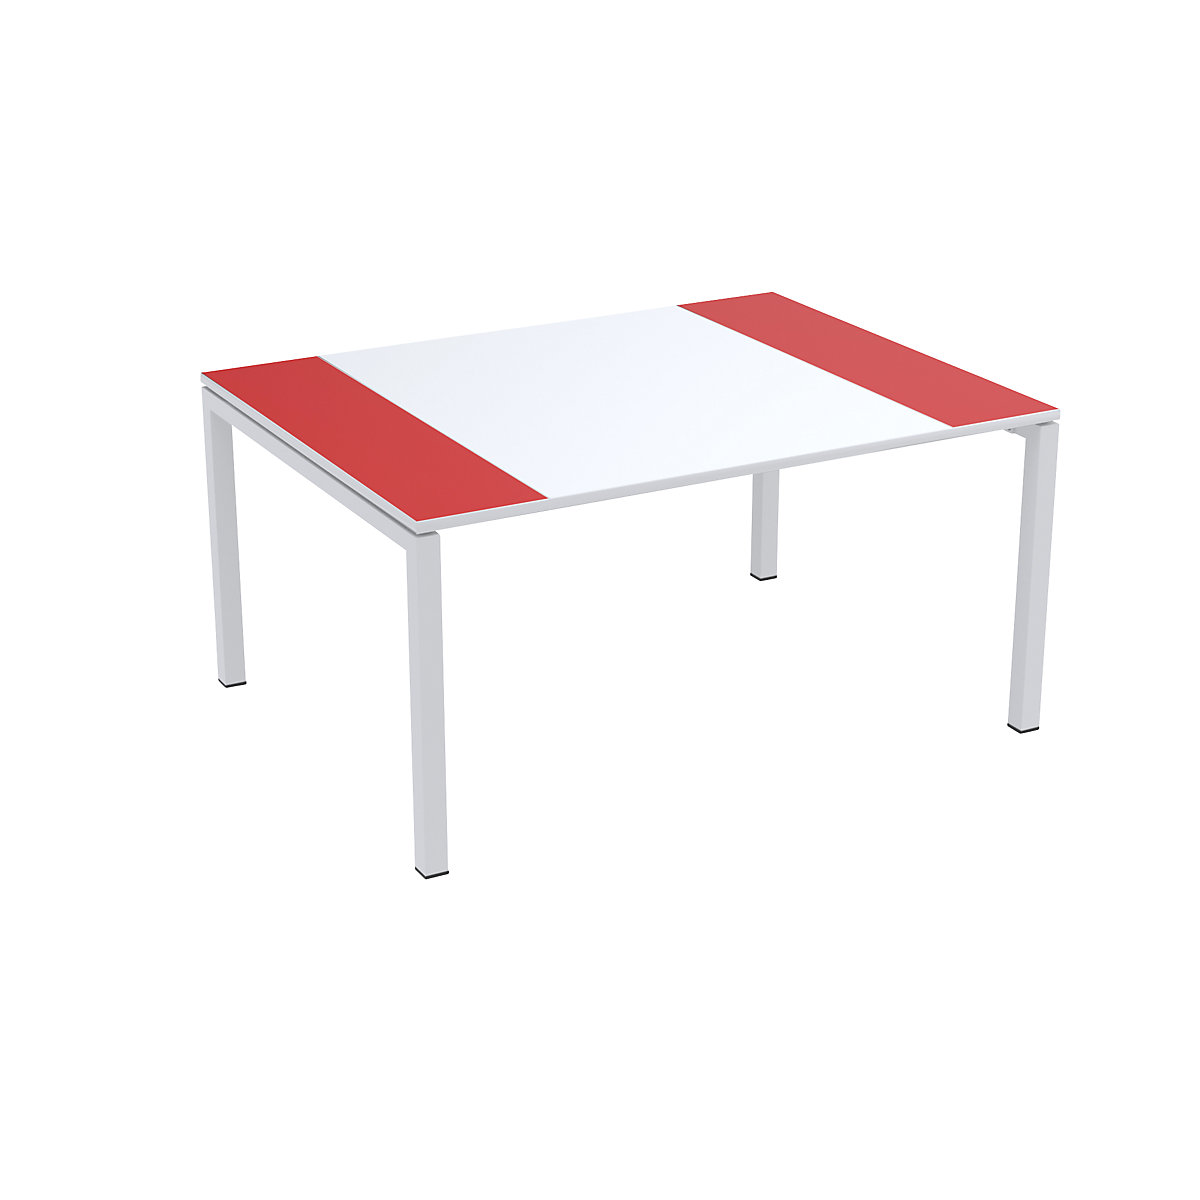 Konferenztisch easyDesk® Paperflow, HxBxT 750 x 1500 x 1160 mm, weiß/rot-7